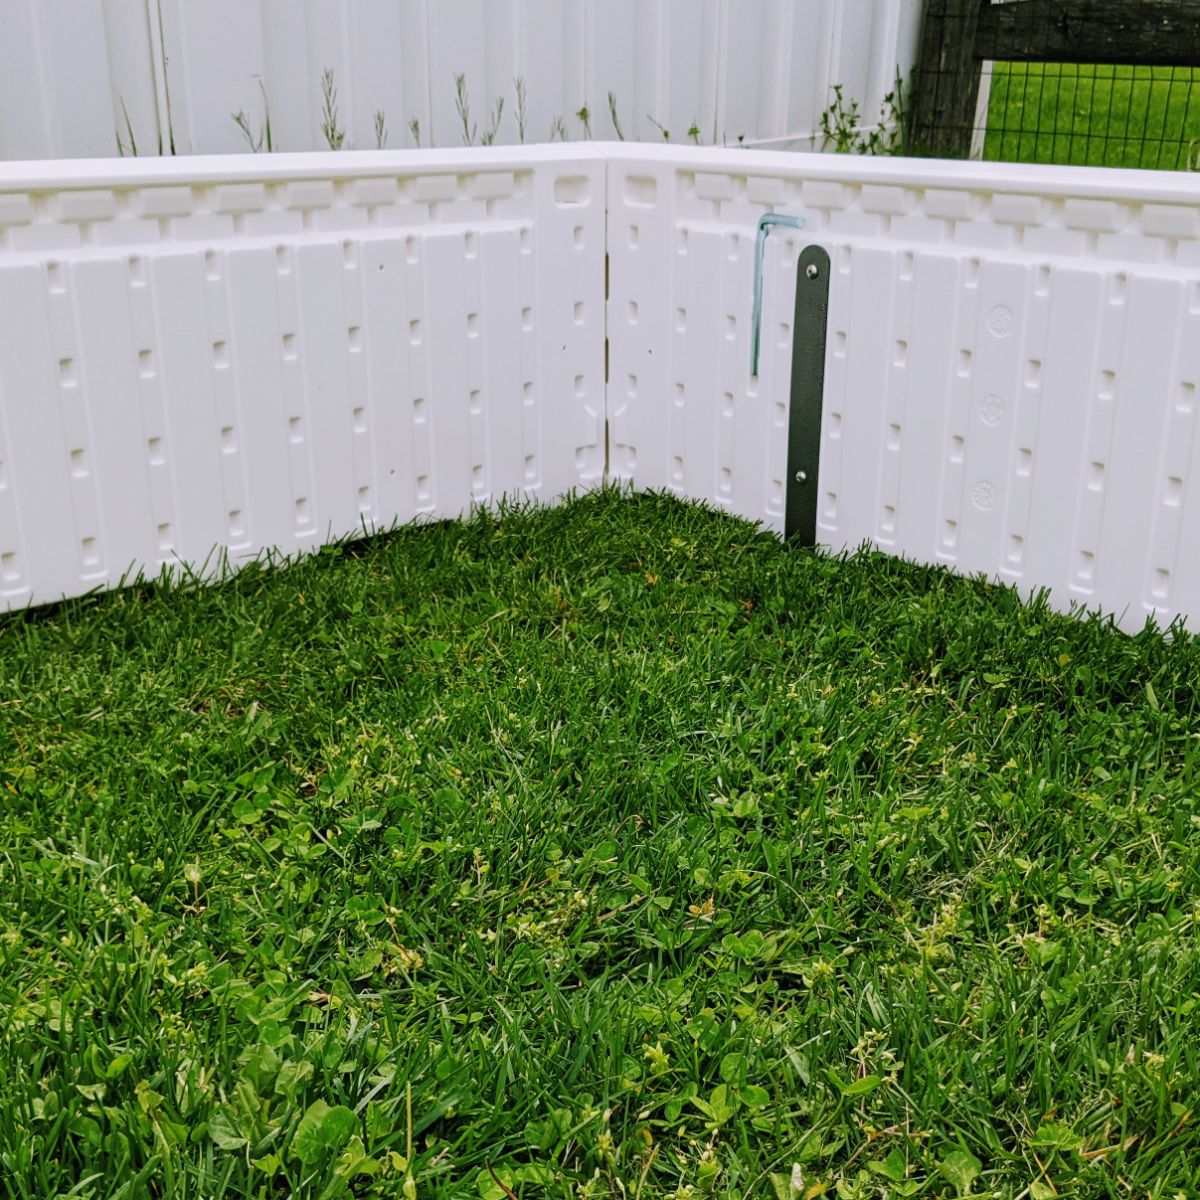 4x4 white raised garden box in the grass